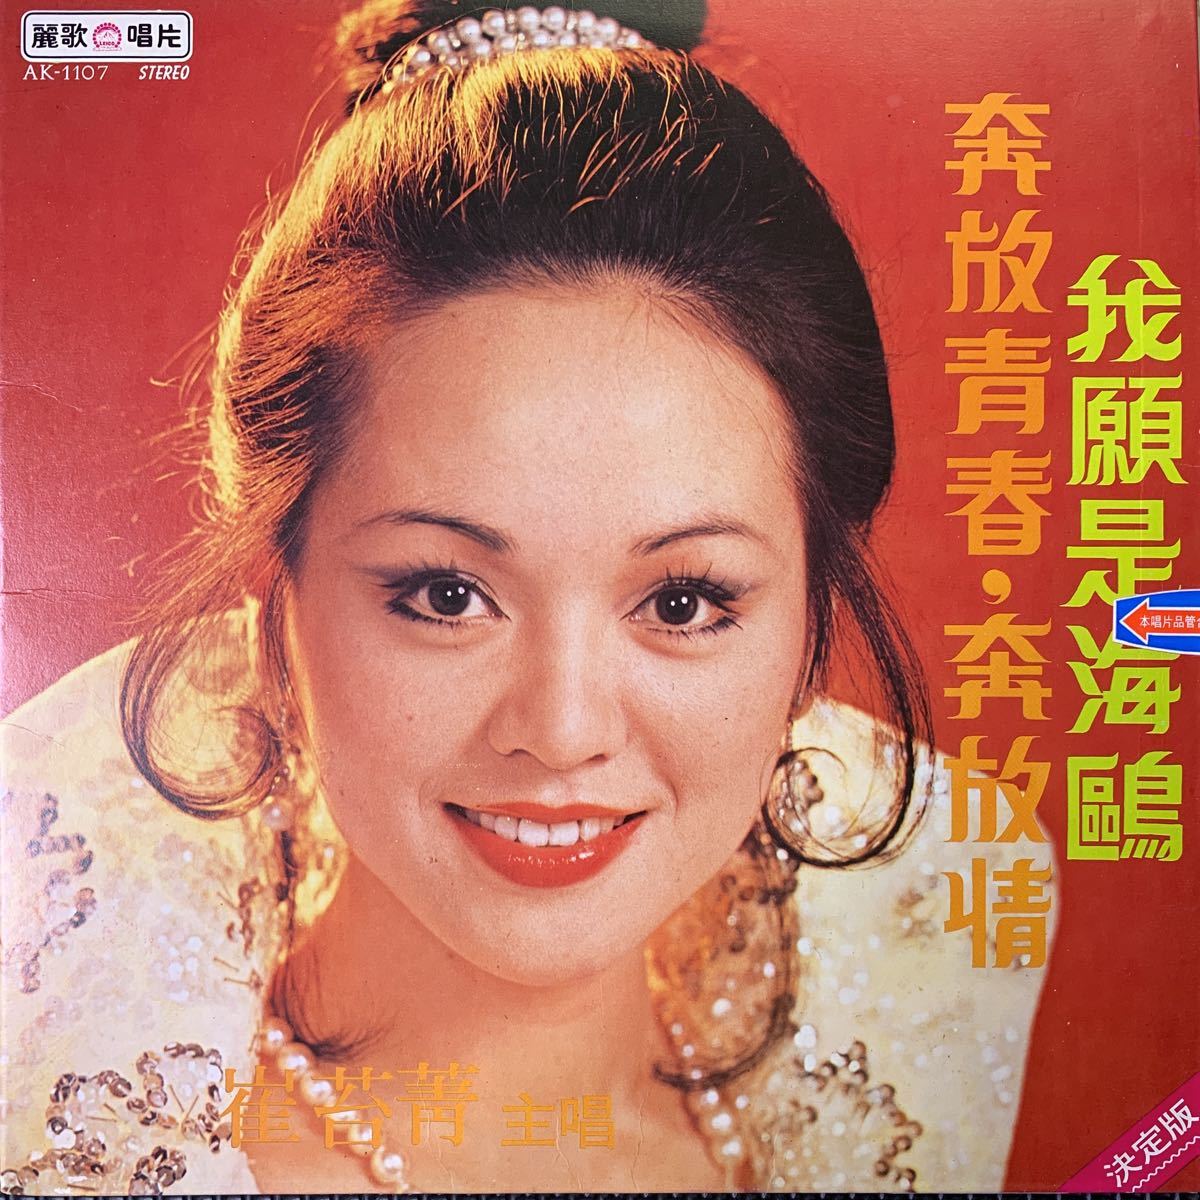 レコード・Vinyl・台湾盤・Taiwan・台灣・C-Pop・麗歌唱片・Leico Record・AK-1107の画像1